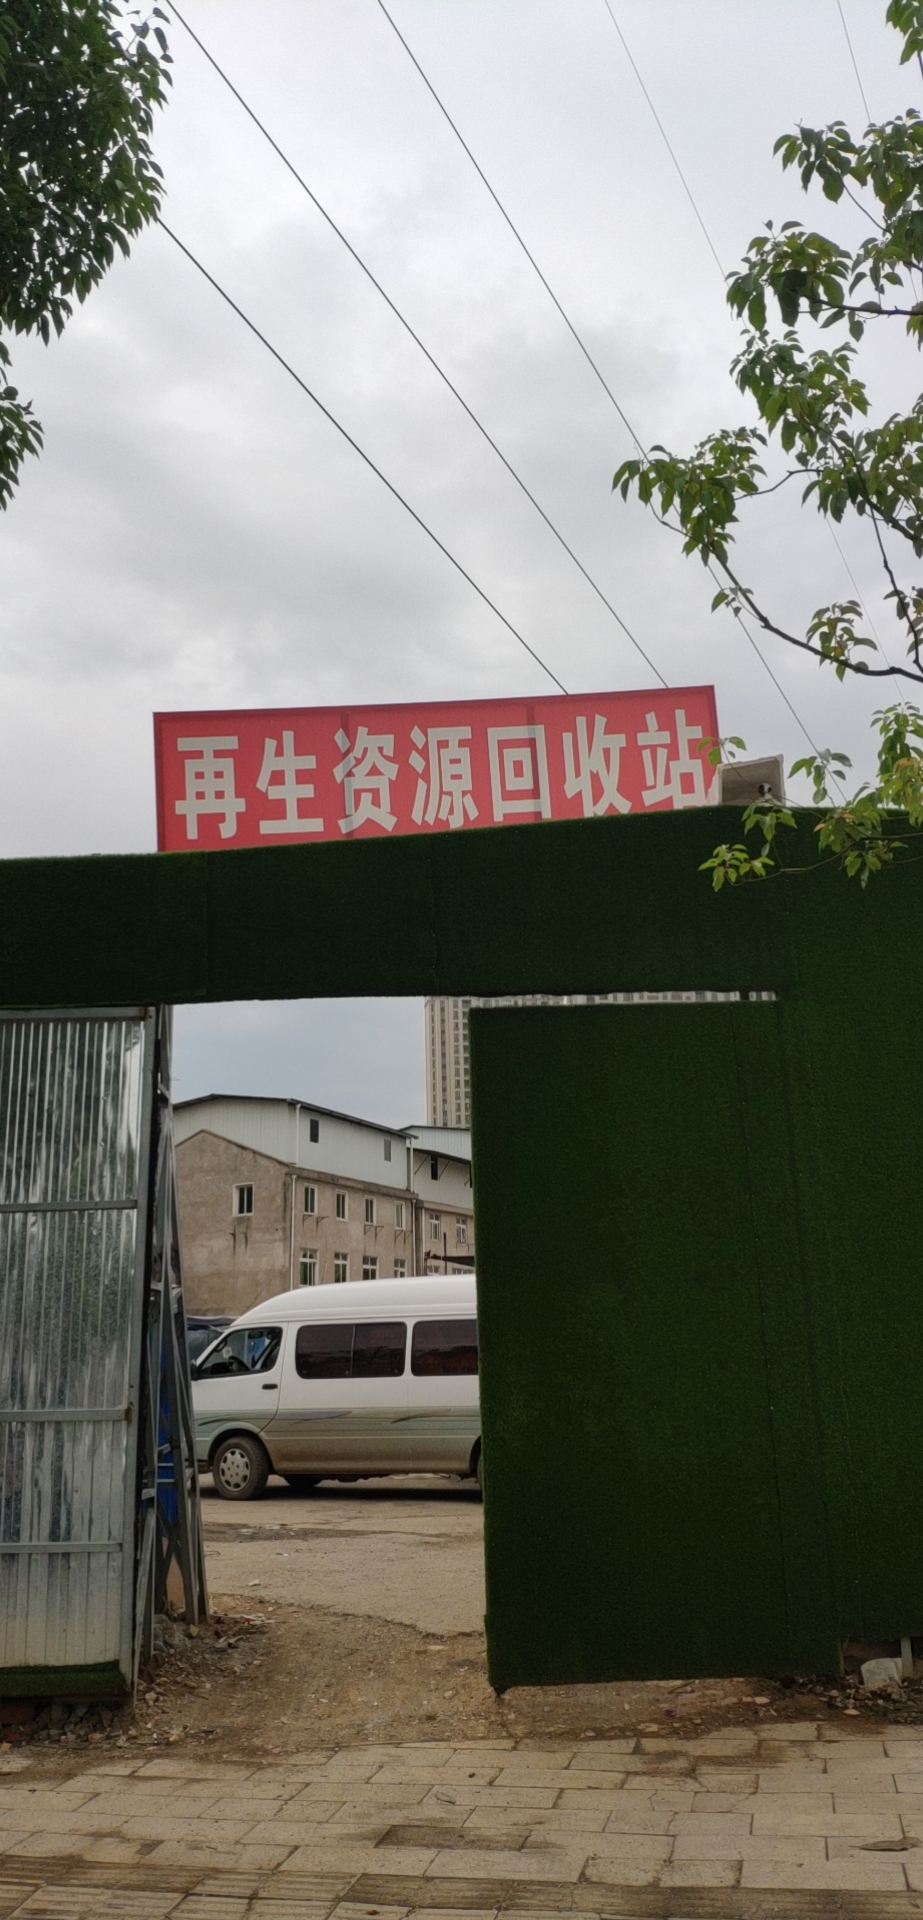 湖北武汉区域武汉瑞策再生资源回收公司转型企业化发展模式